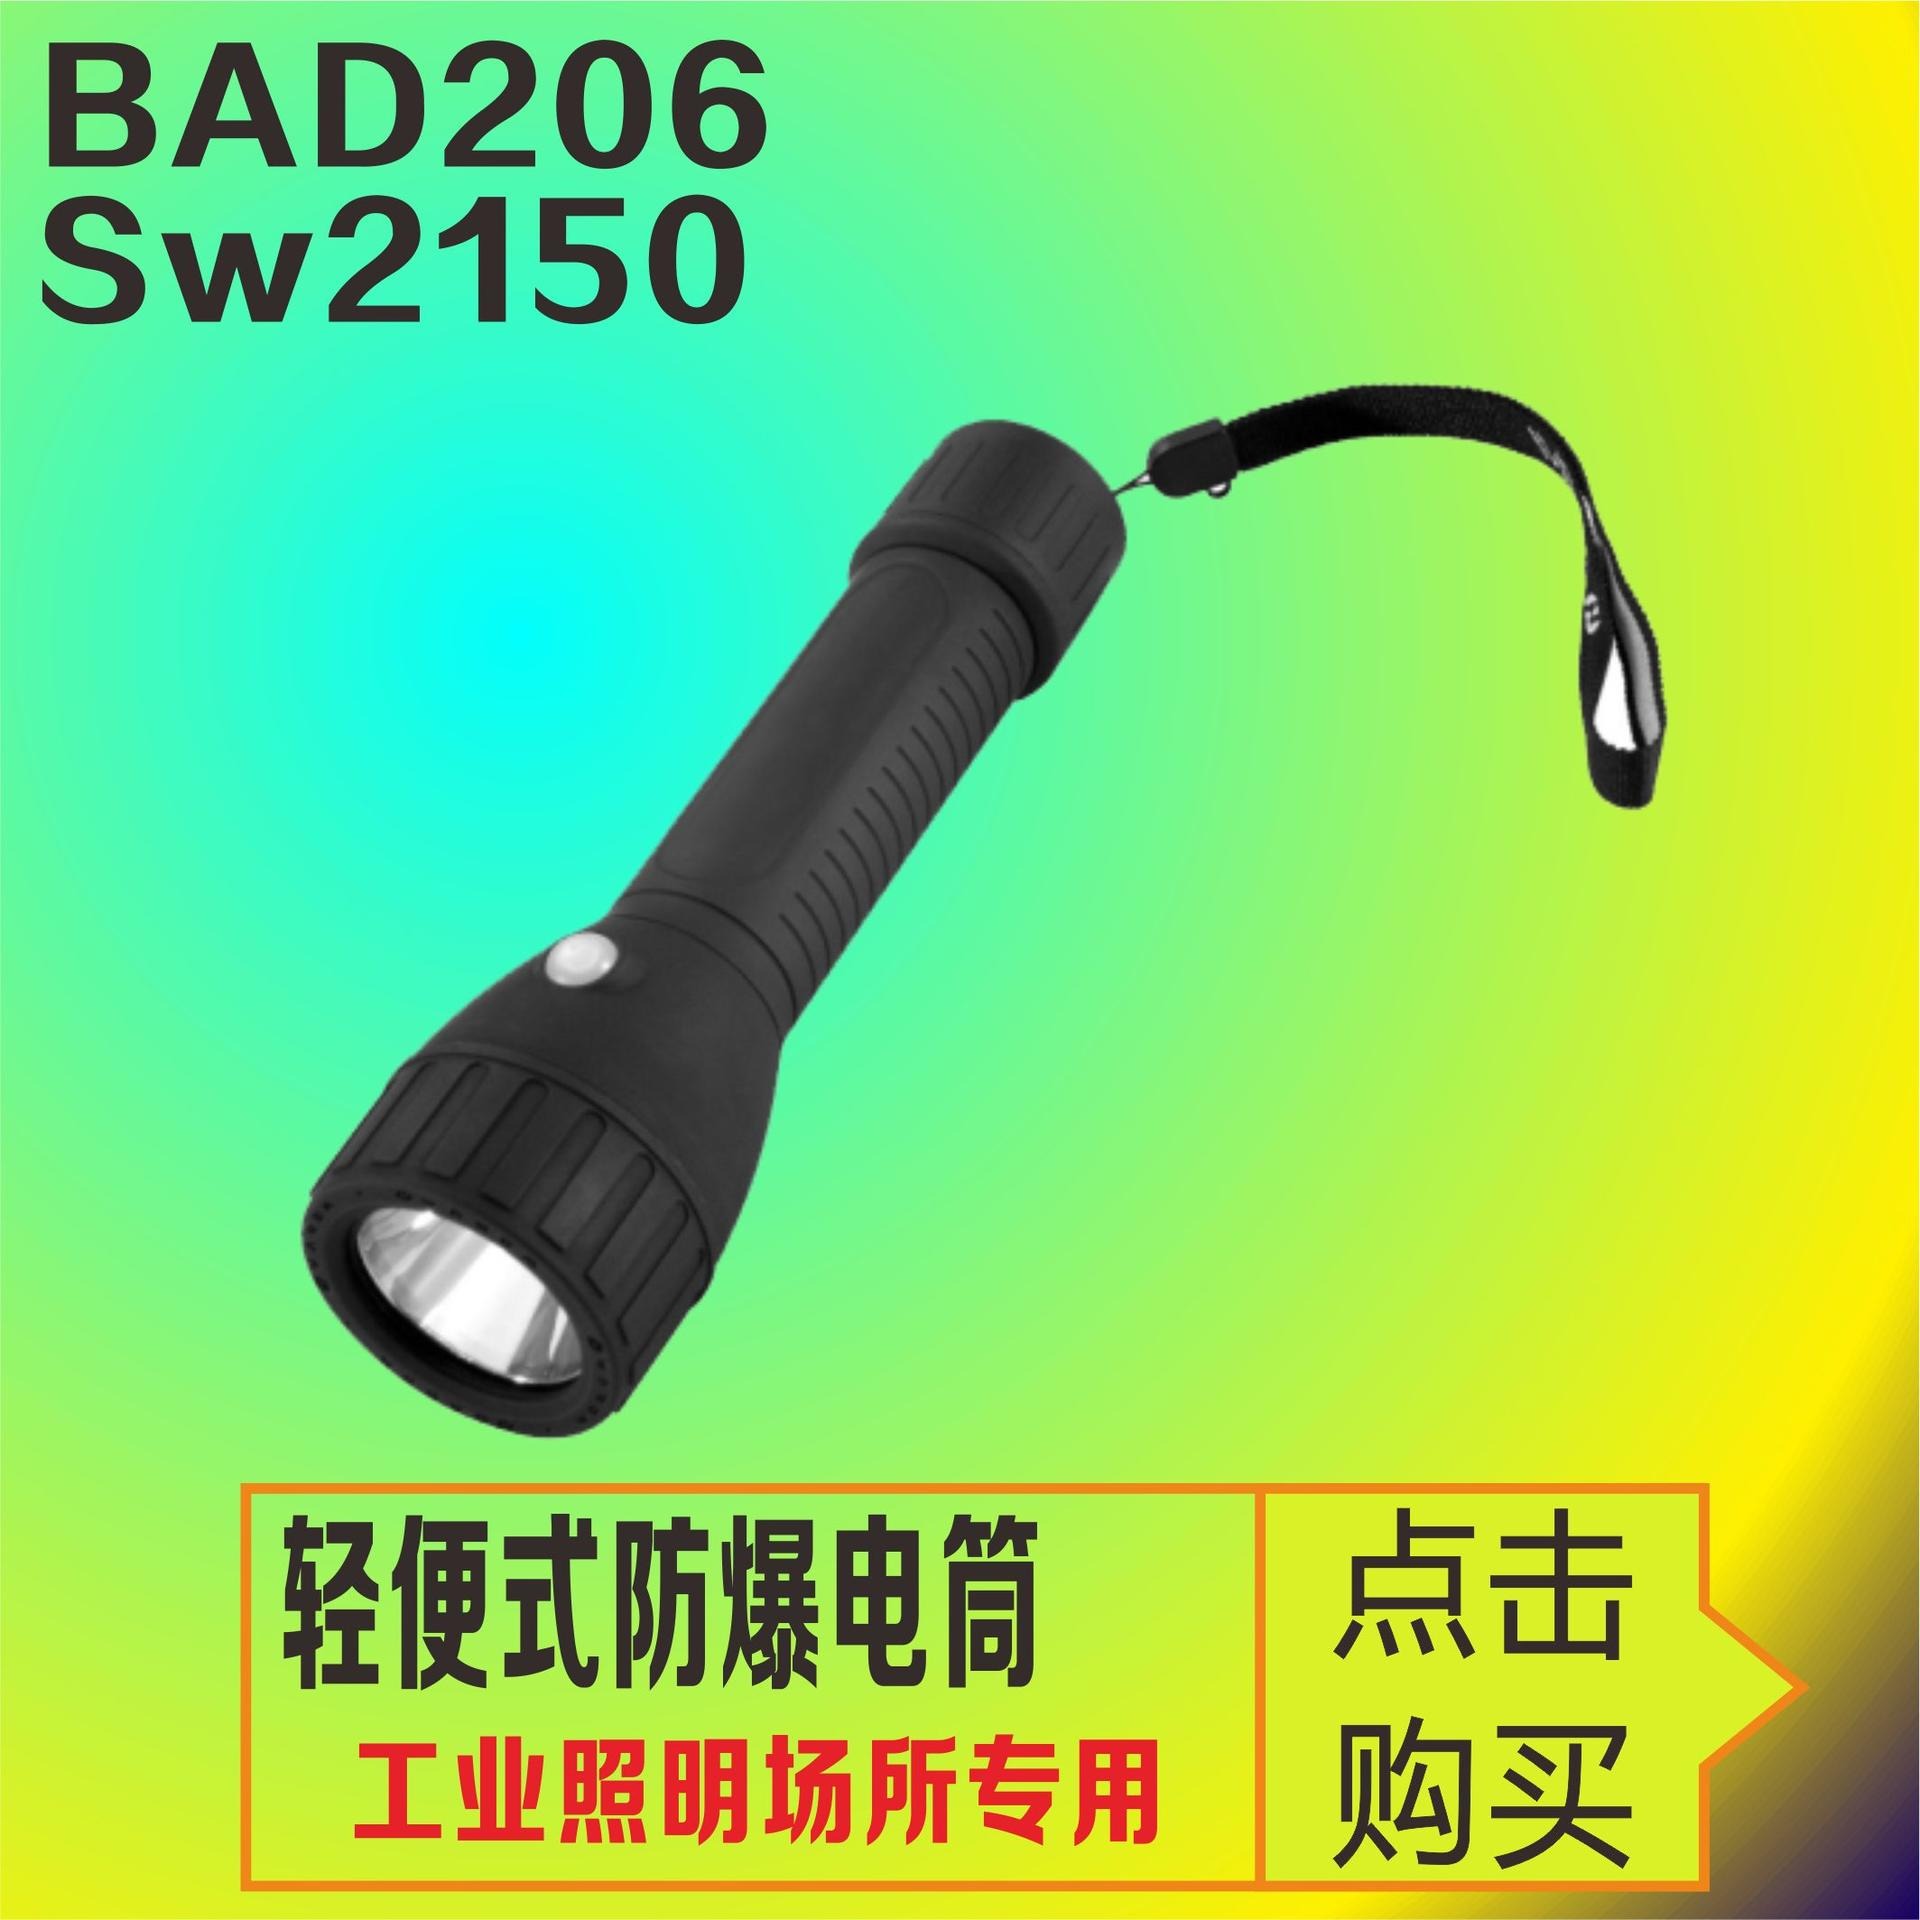 洲创电气BR3310轻便式防爆电筒 BJQ202手电筒 LED照明手电筒 手持/斜挎/吊挂工作灯